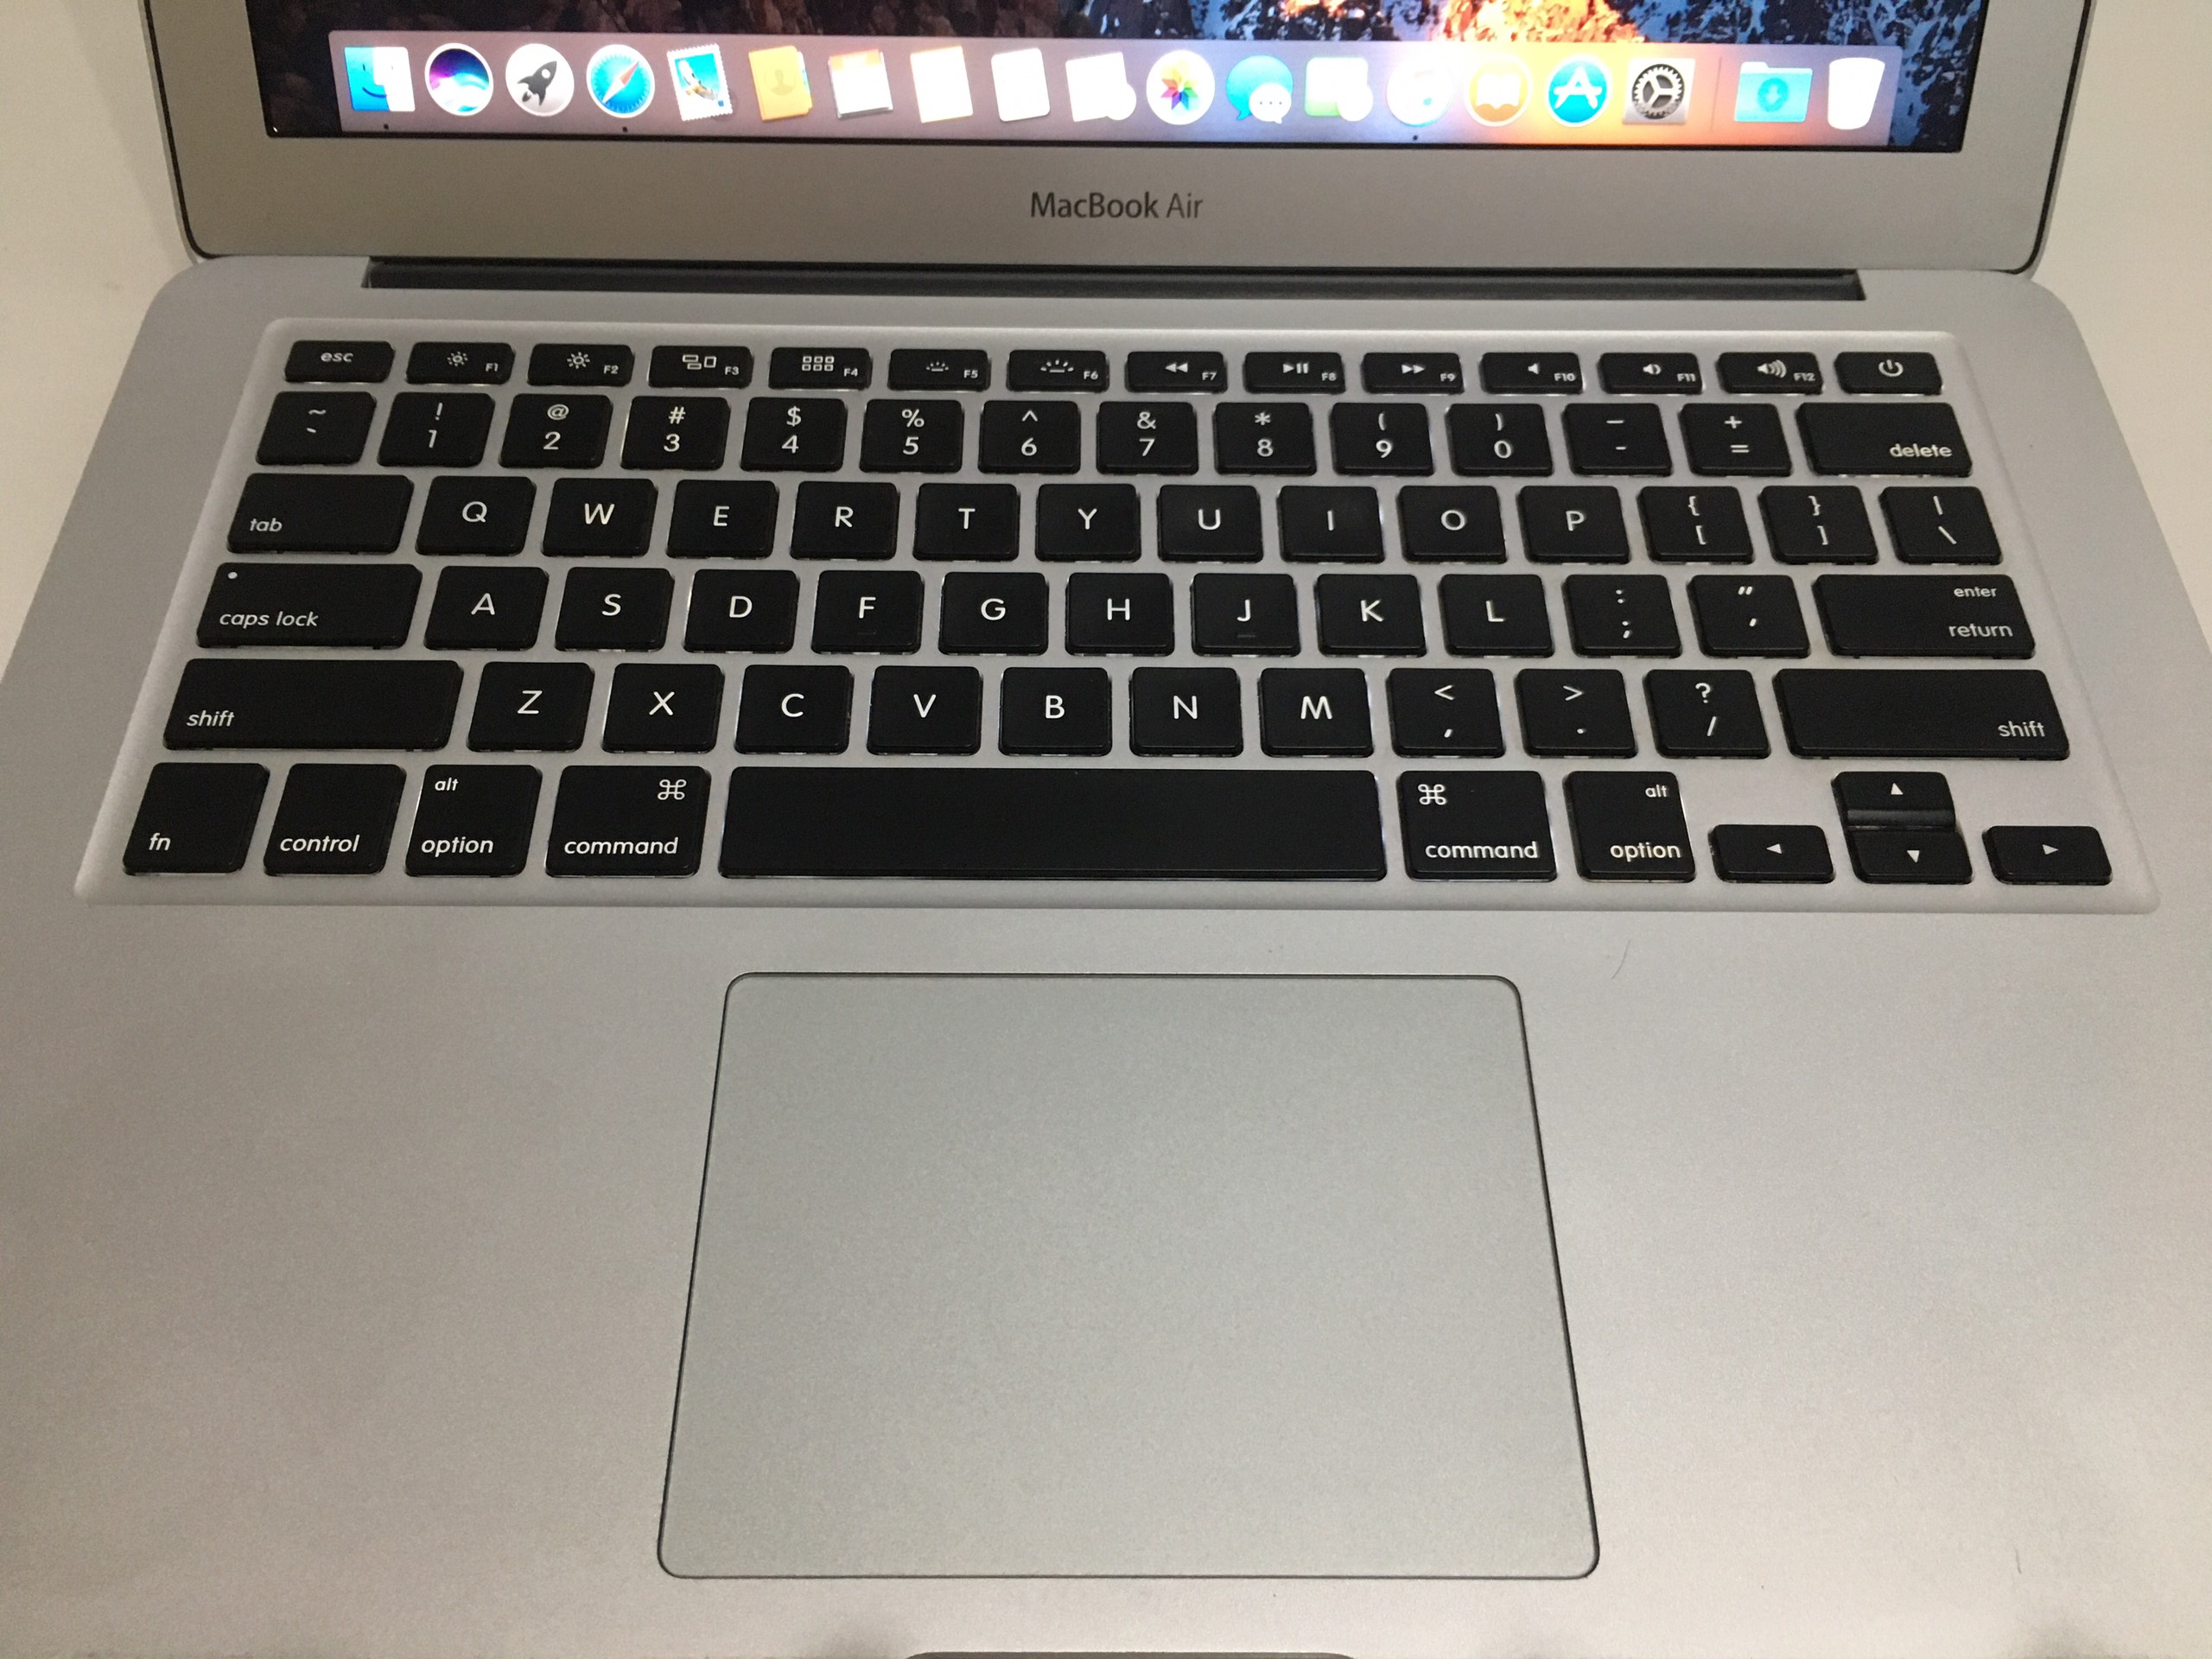 macbook-air-2016-core-i5-16ghz-ram-8gb-ssd-128gb-133-inch